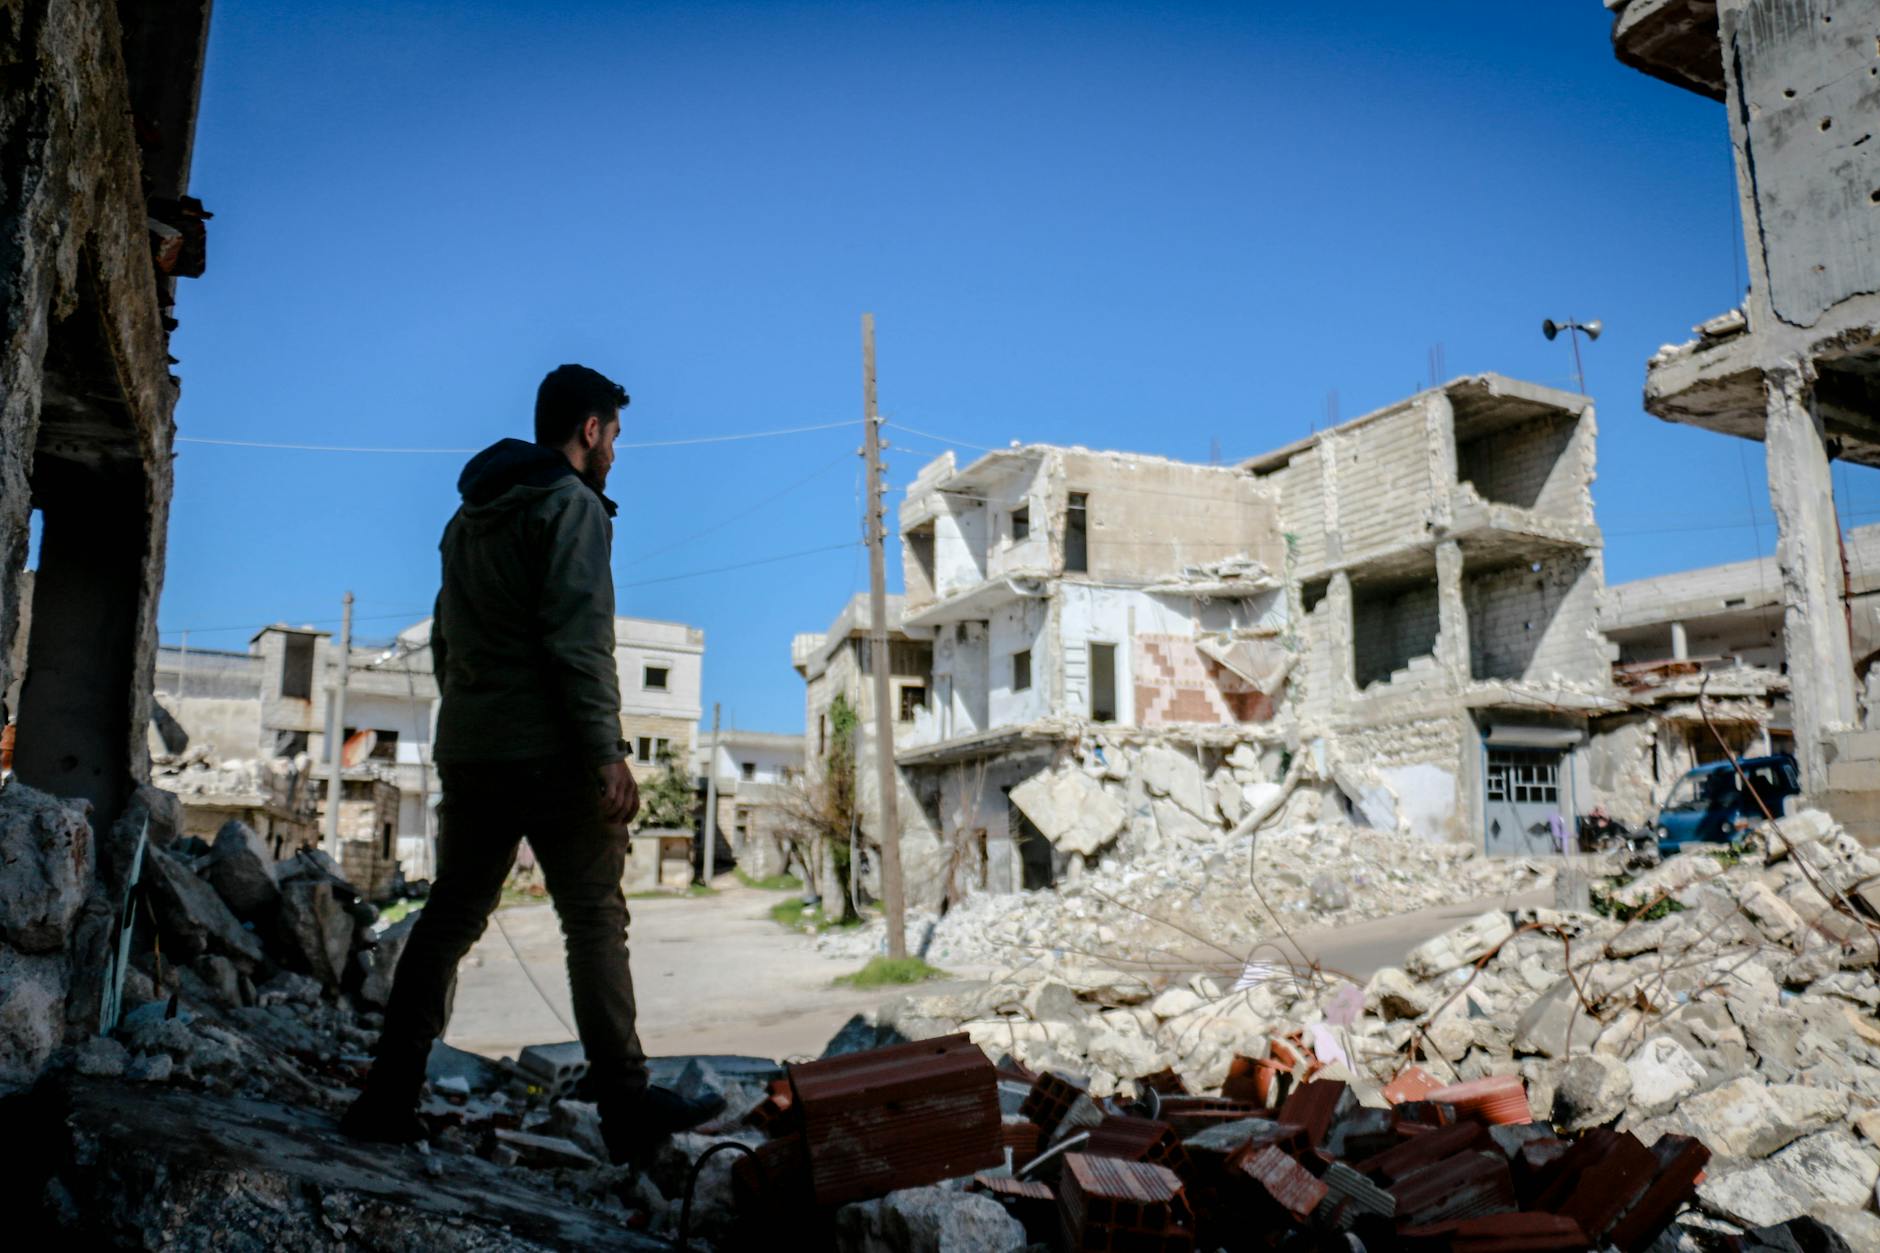 Eindopbrengst Giro555 voor slachtoffers aardbeving Turkije en Syrië ruim 128 miljoen euro